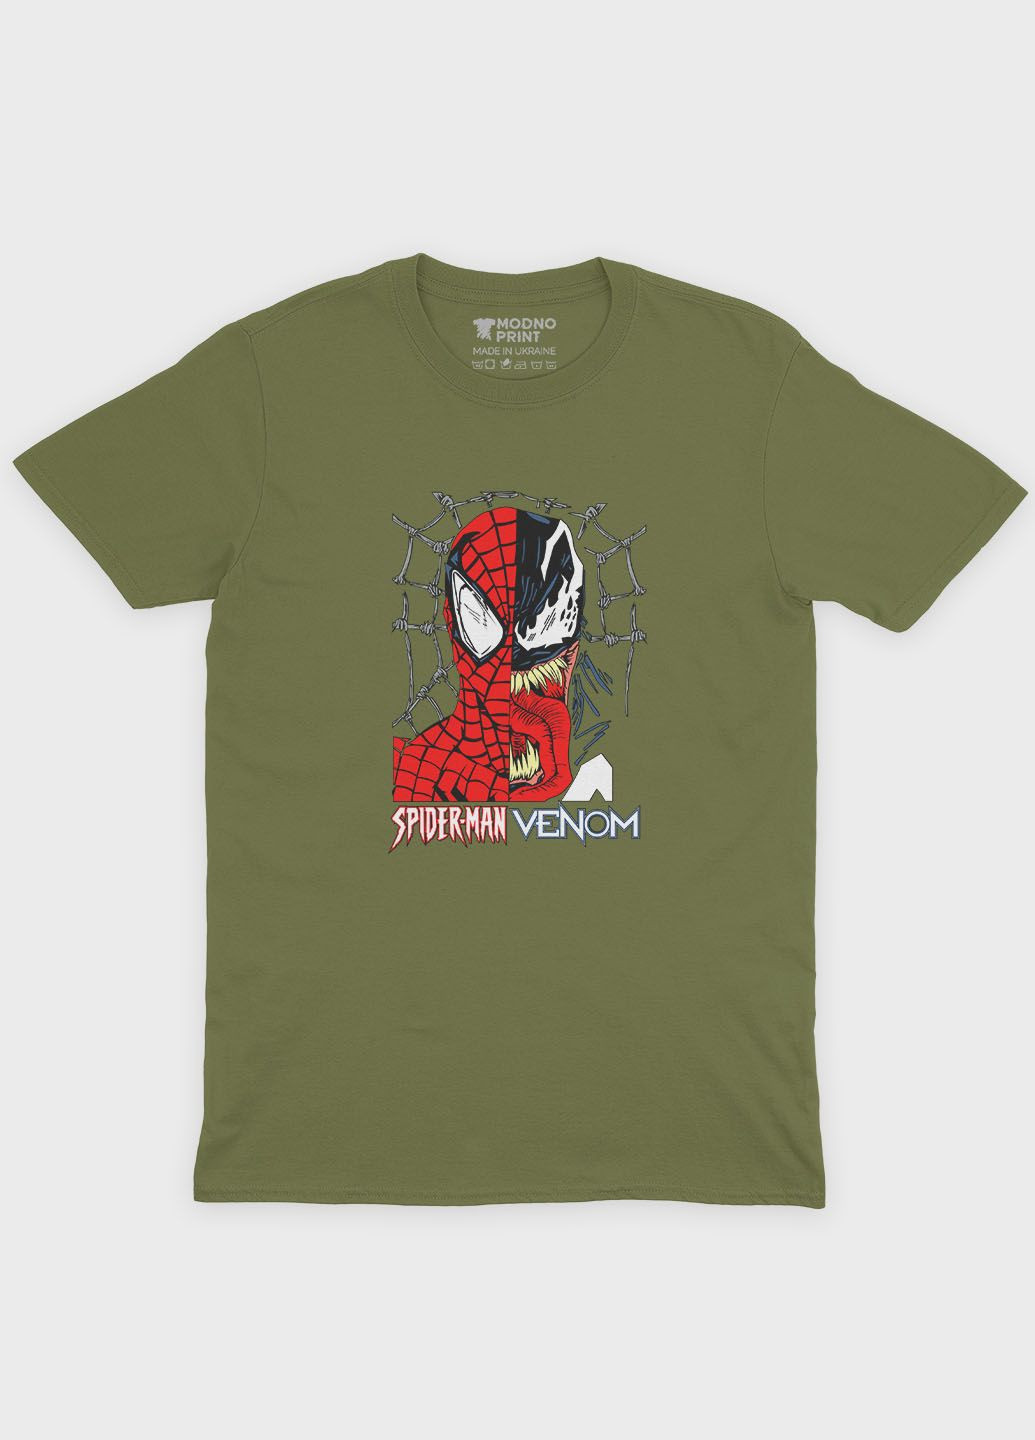 Хаки (оливковая) мужская футболка с принтом супергероя - человек-паук (ts001-1-hgr-006-014-050) Modno